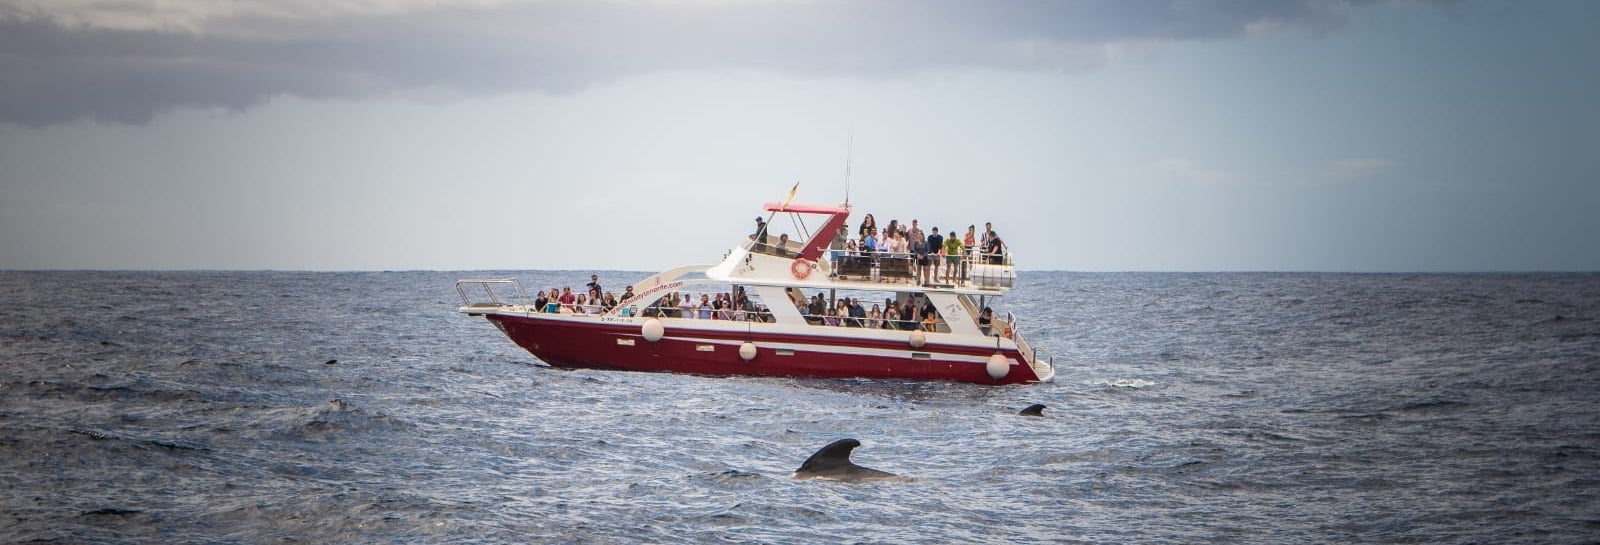 Avistamiento de cetáceos en Los Cristianos